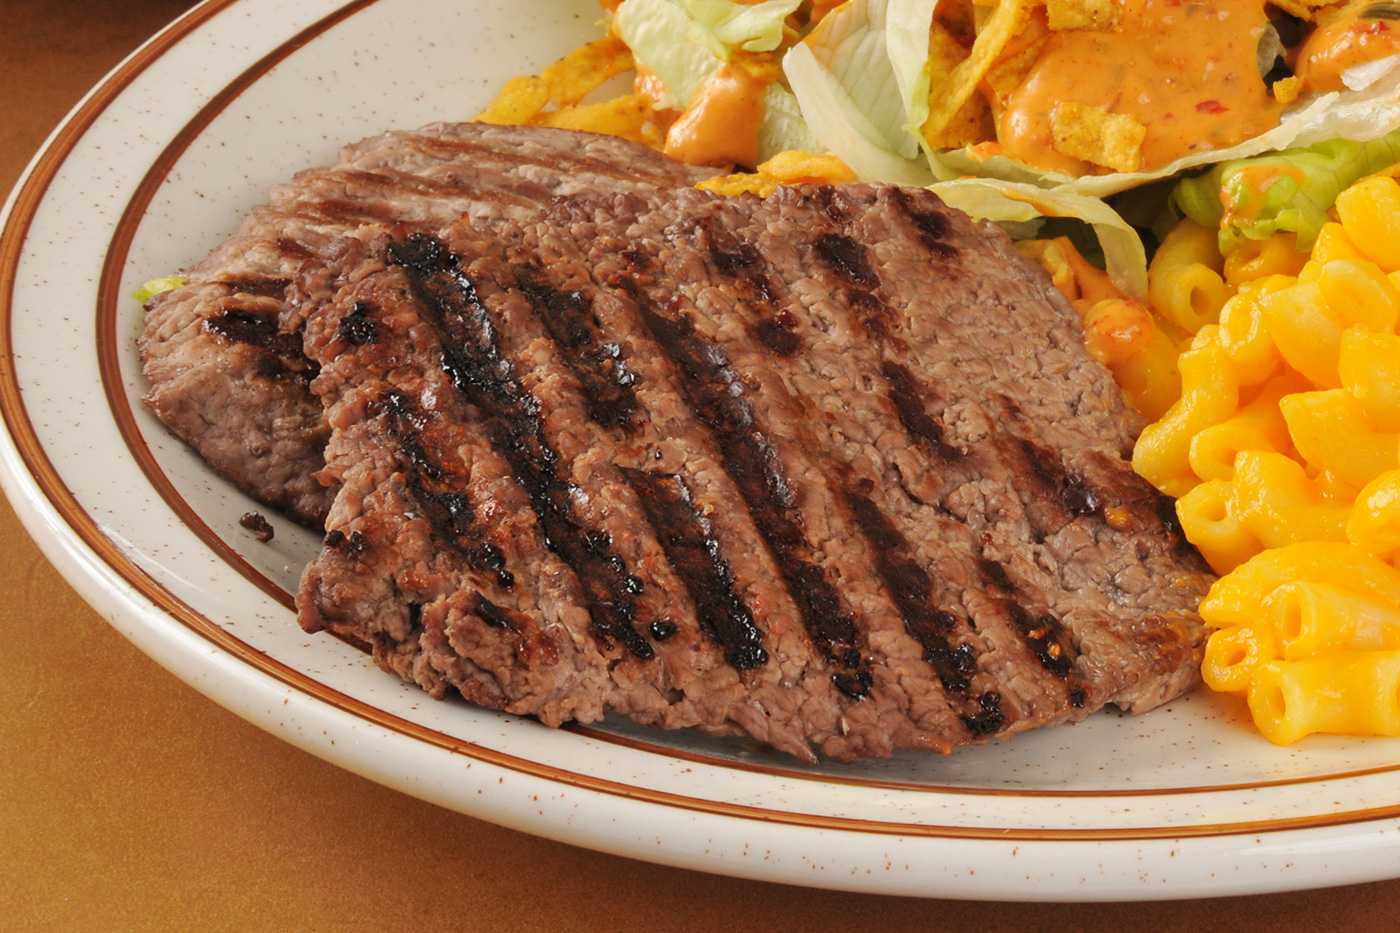 cubed-steak